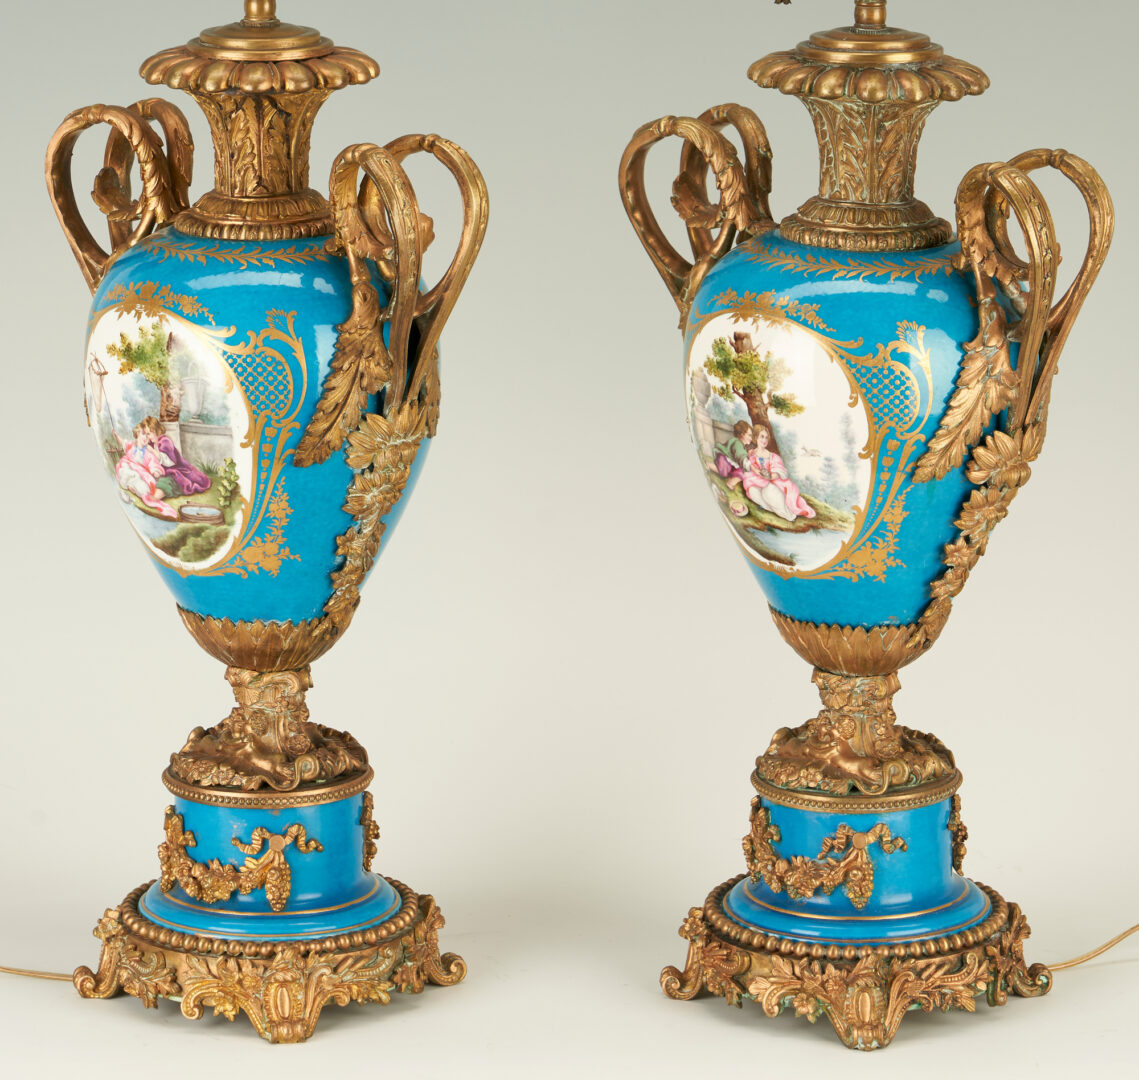 Lot 909: Pr. Sevres Style Bleu Celeste Porcelain Lamps, Ormolu mounts